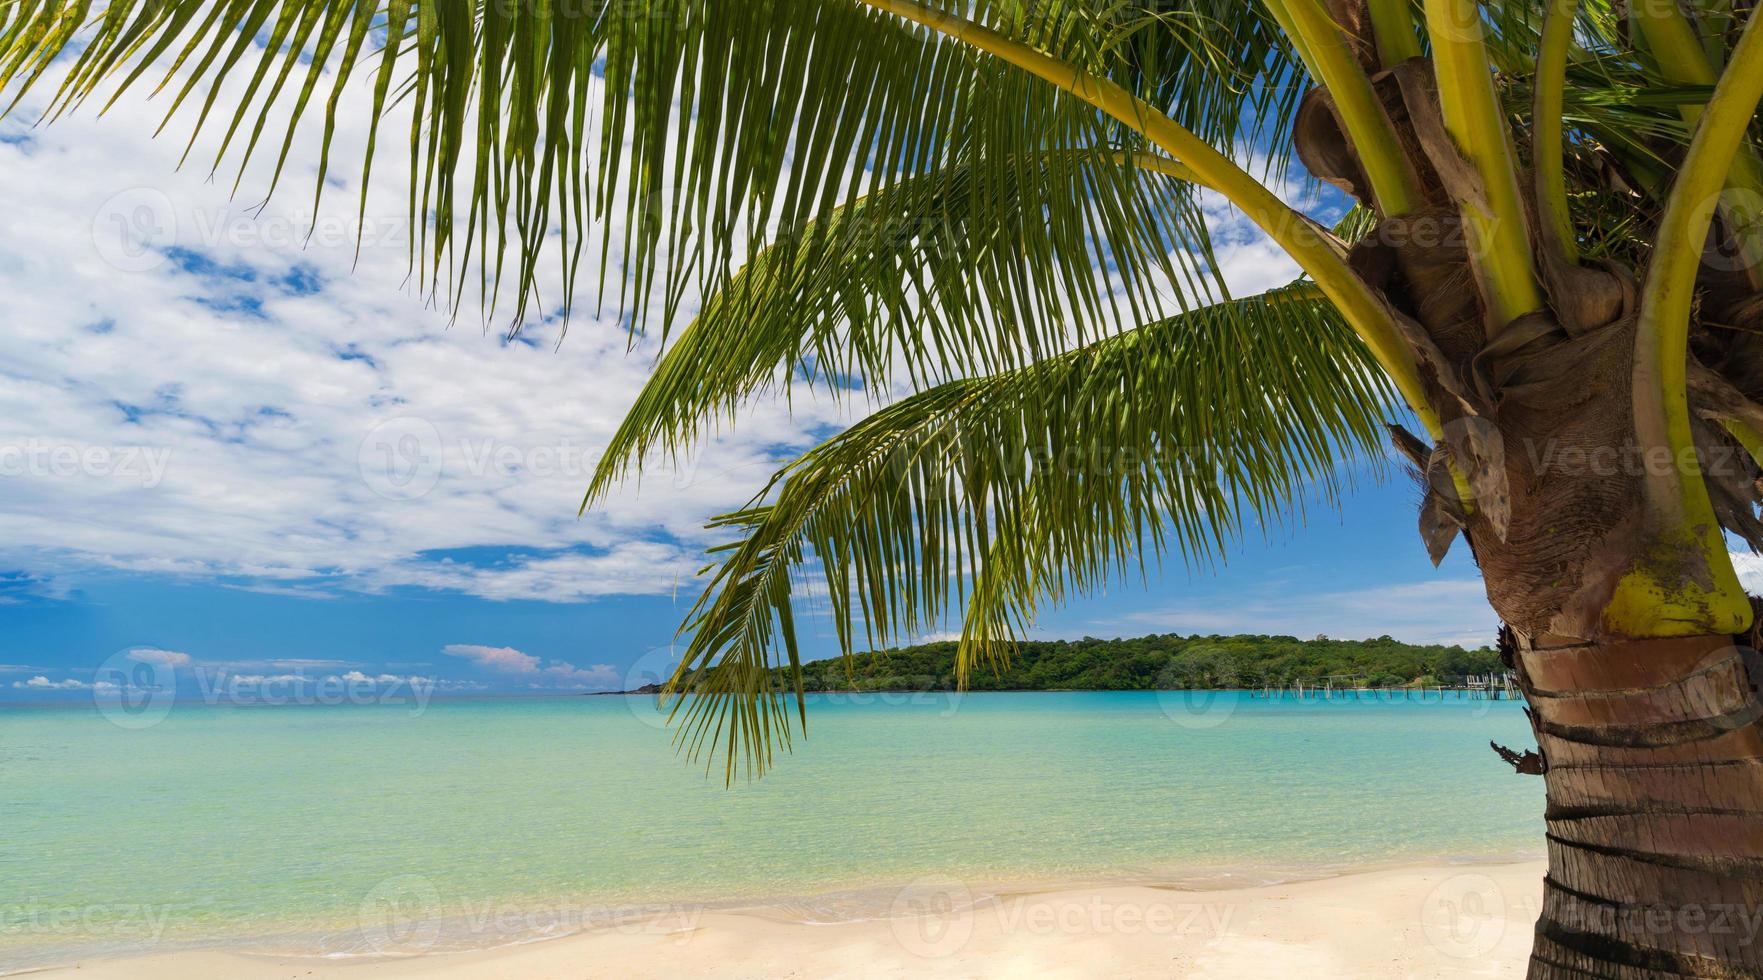 prachtig tropisch strand en zee met kokospalm onder de blauwe lucht foto